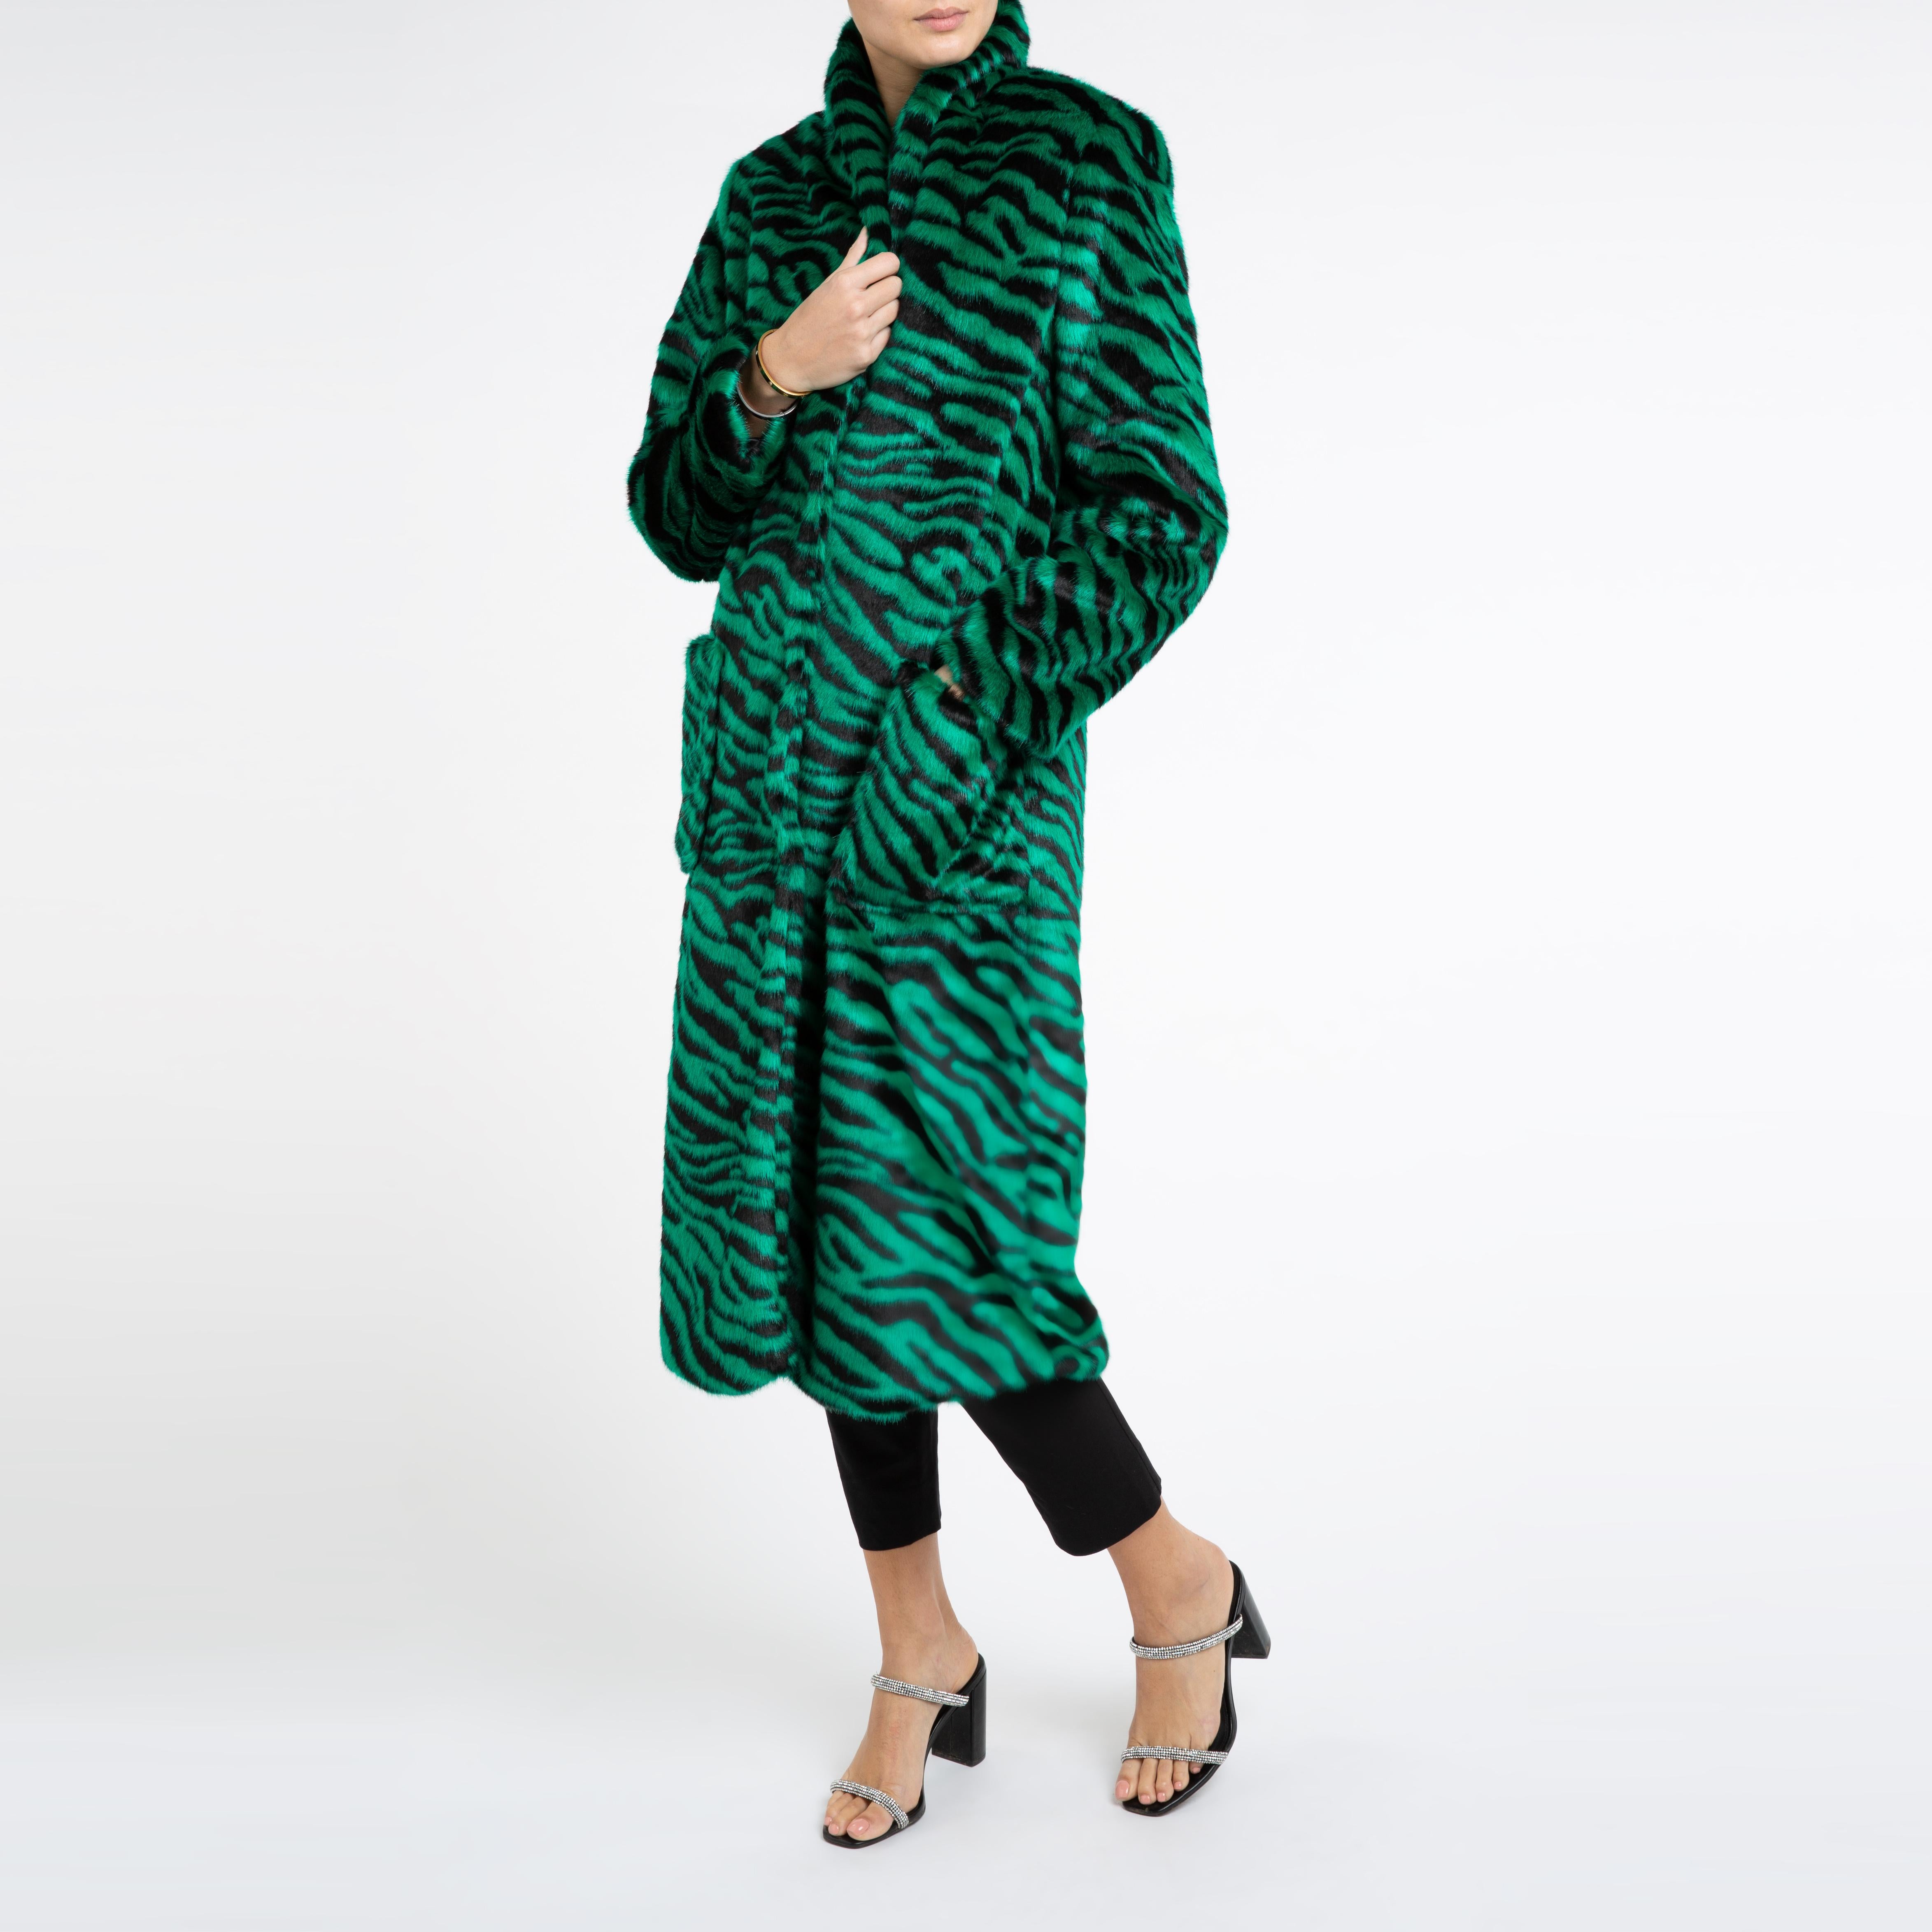 Verheyen London Esmeralda Faux Fur Coat in Emerald Green Zebra Print size uk 14 For Sale 4